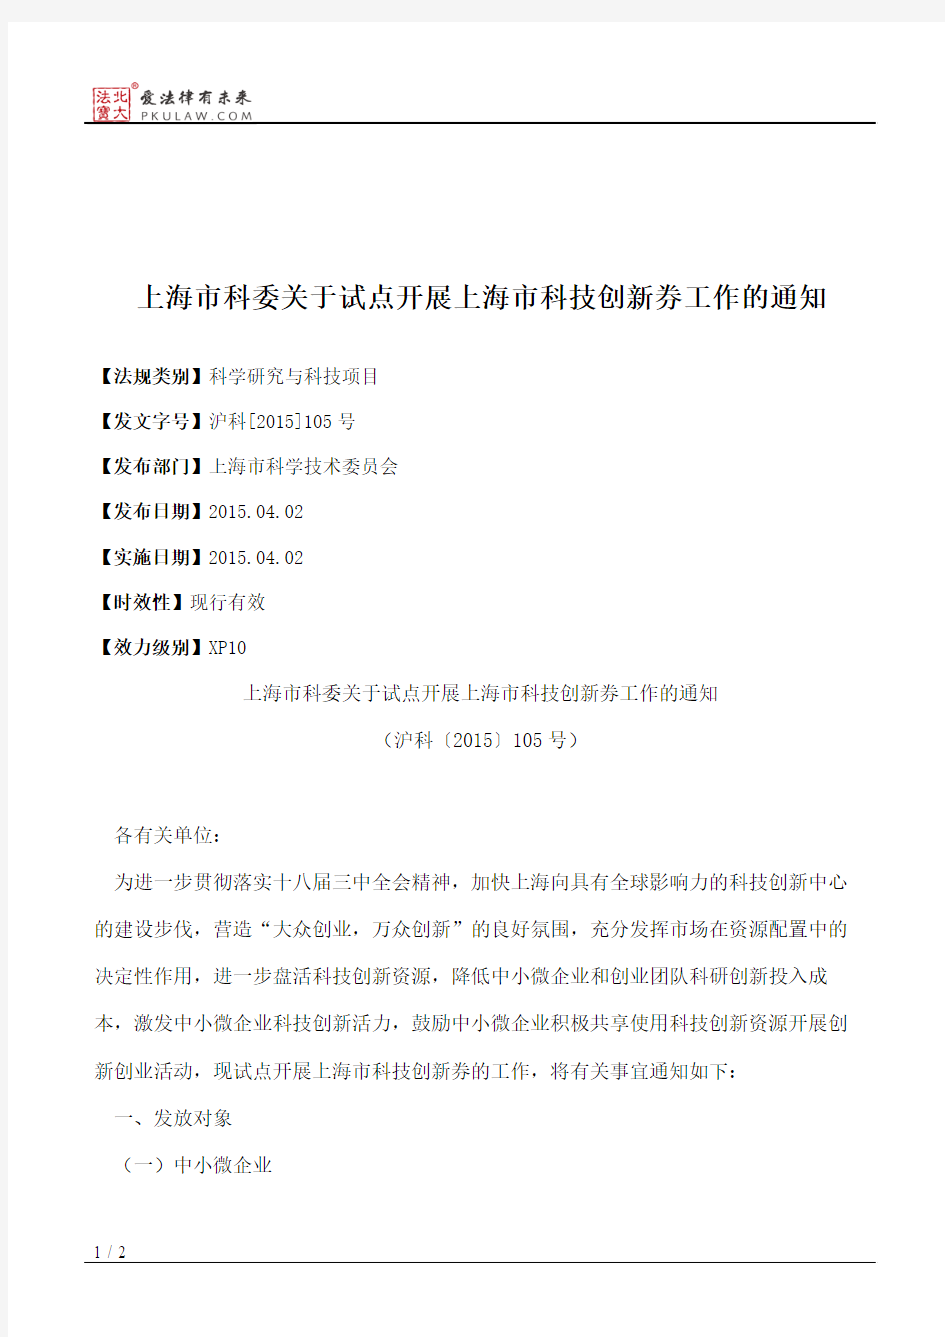 上海市科委关于试点开展上海市科技创新券工作的通知